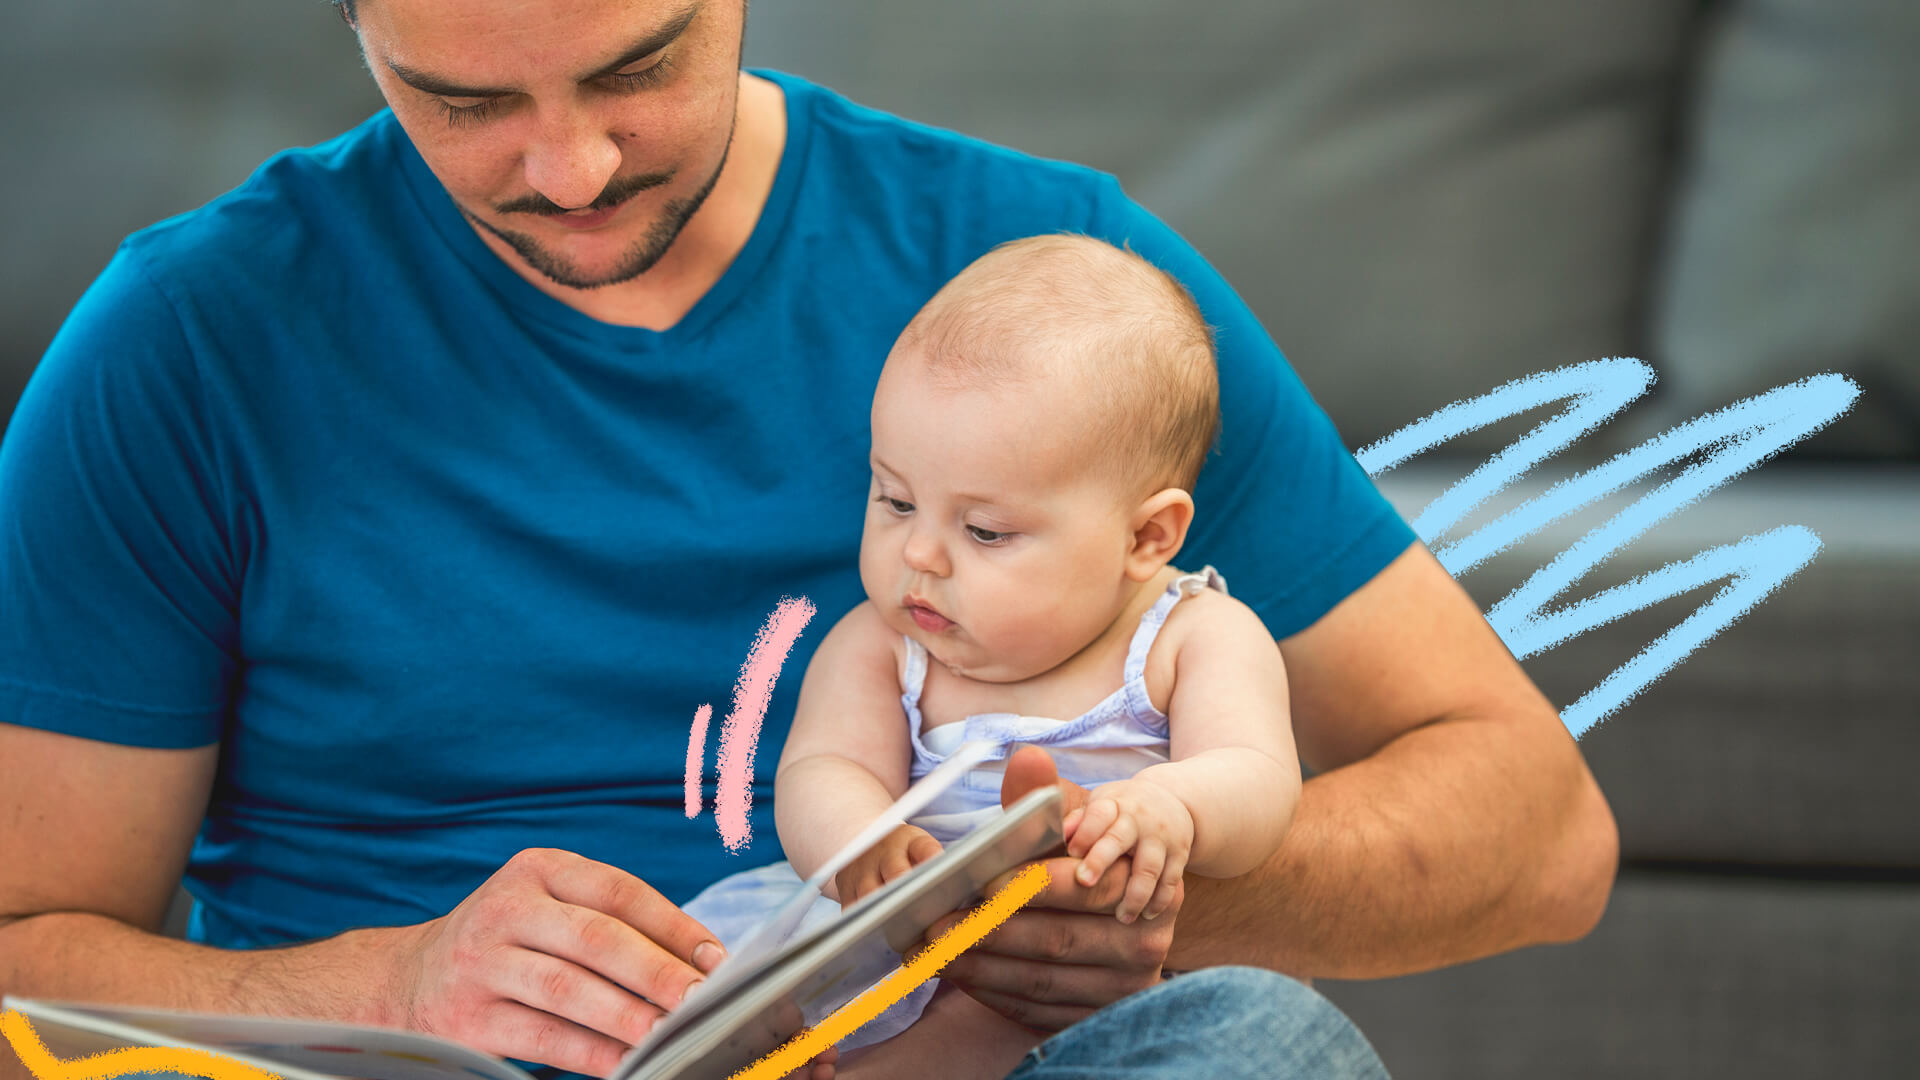 Foto de um bebê que lê um livro junto do pai. O homem usa camiseta azul.